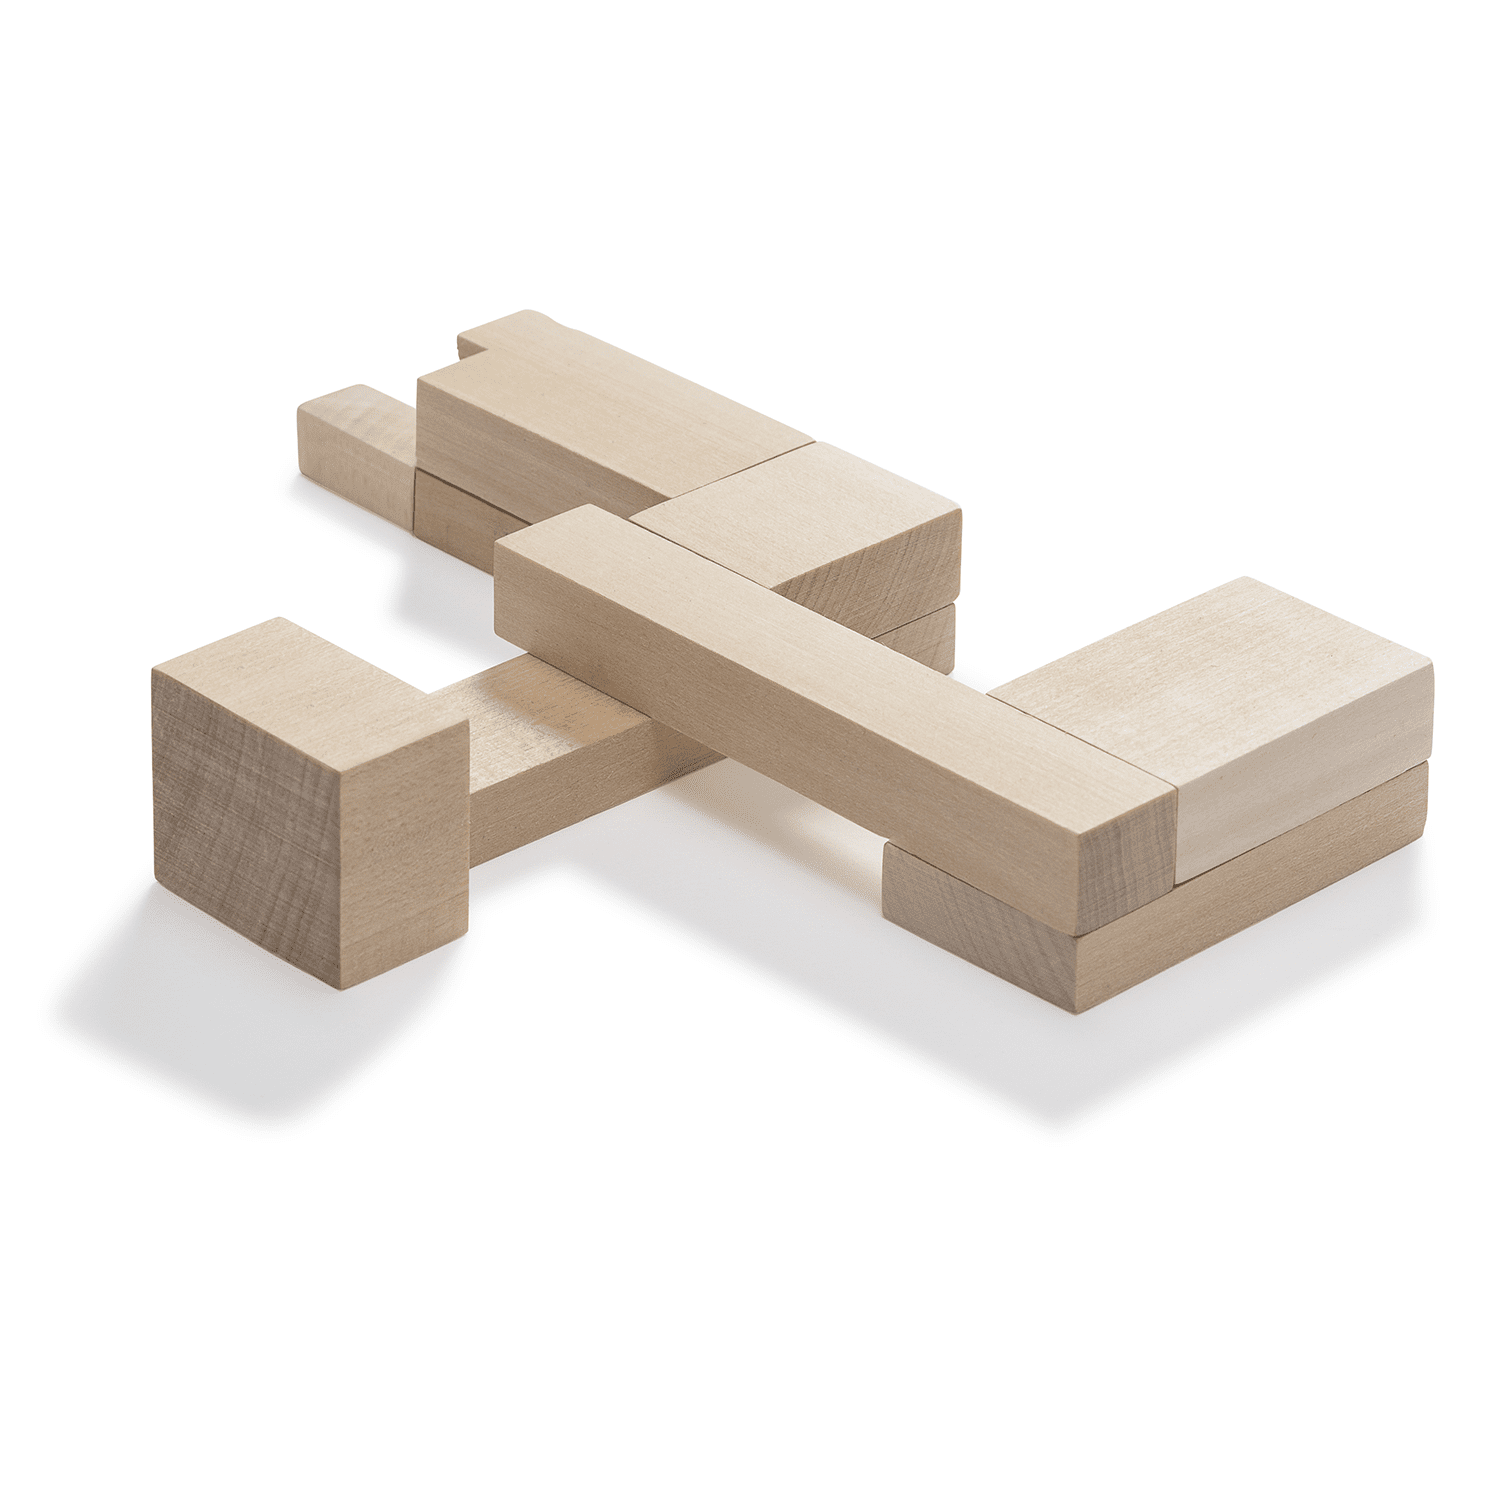 Imagen de Bauhaus Dessau Building Puzzle